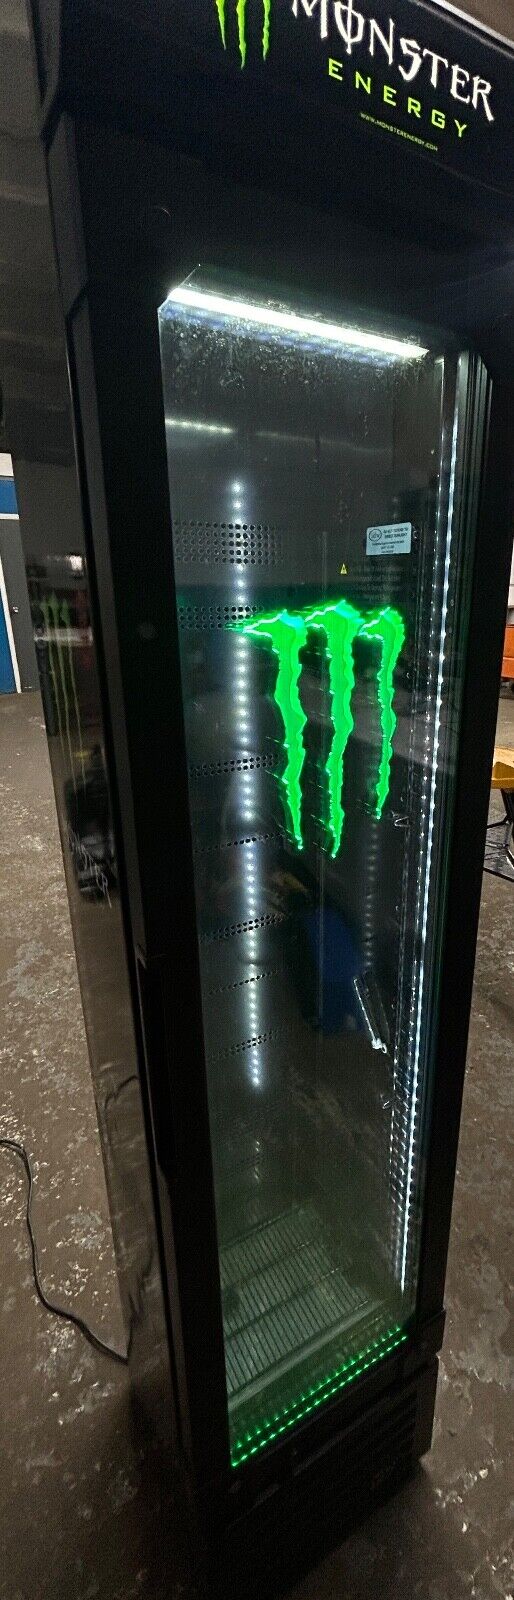 monster energy 6 ft refrigerator